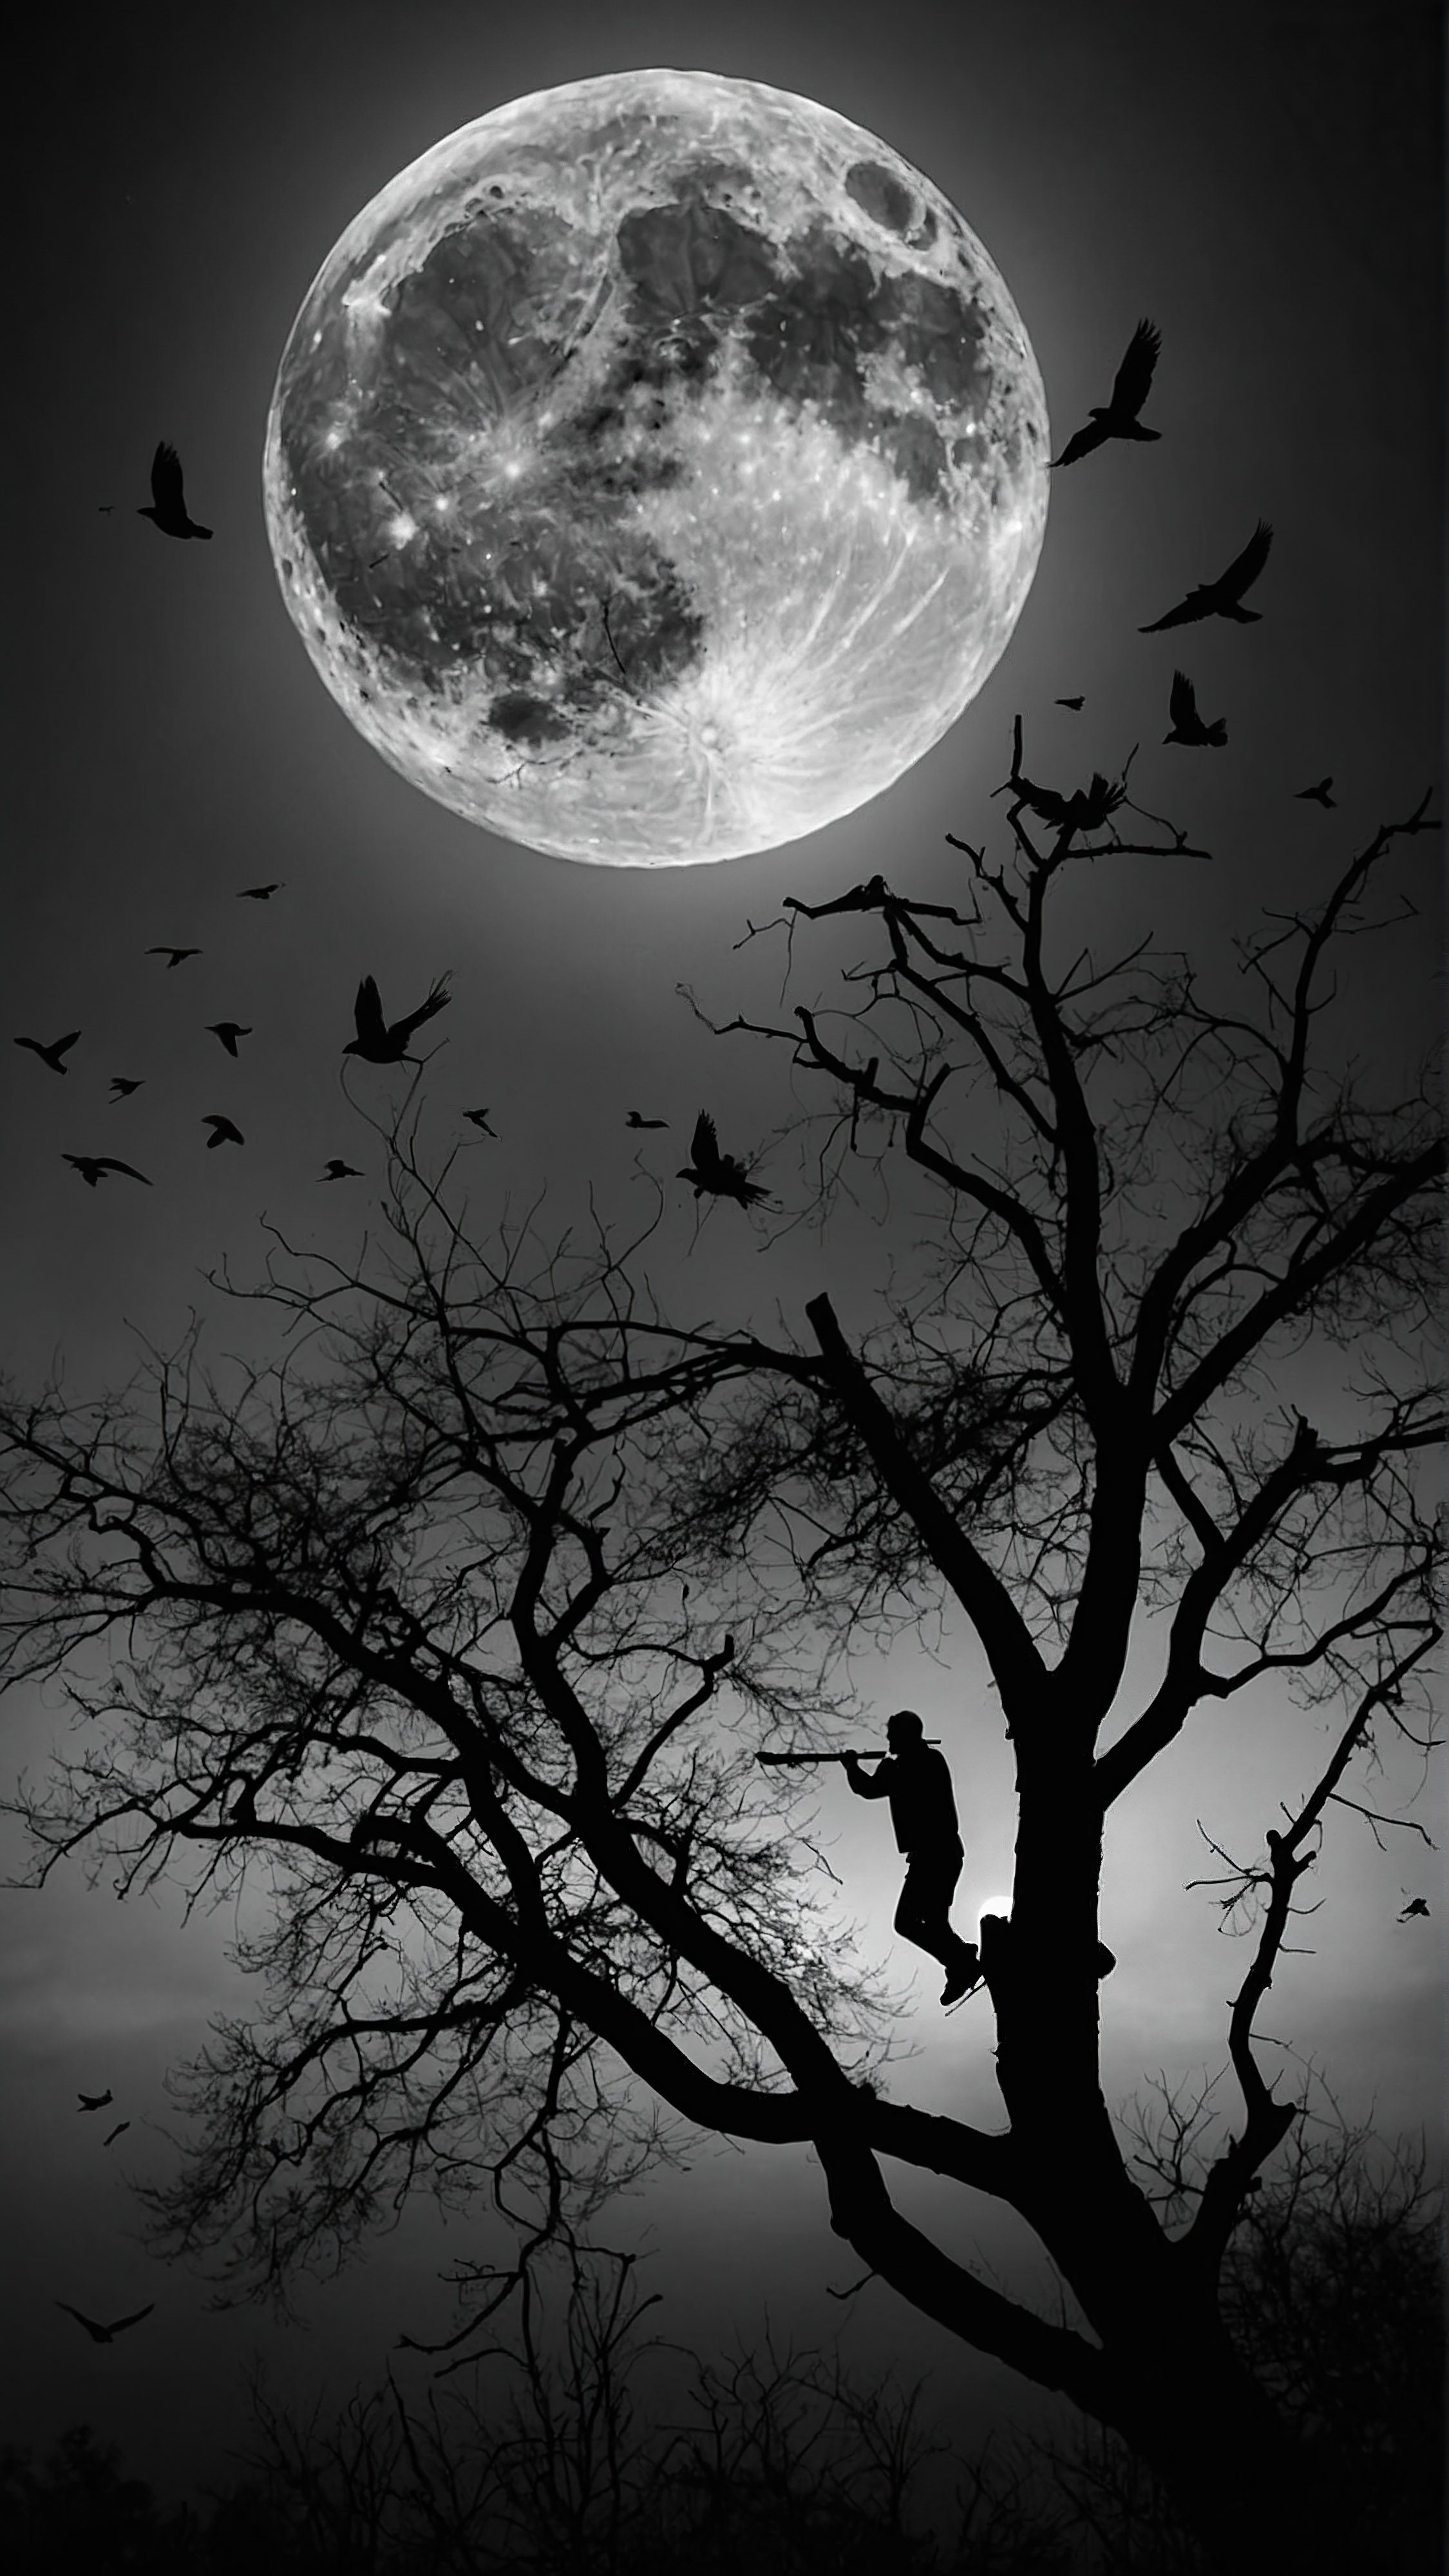 Expérimentez la tranquillité avec un fond d'écran esthétique noir et blanc pour votre iPhone, présentant une silhouette de personne assise sur une branche d'arbre, jouant de la flûte sur fond de pleine lune, avec des oiseaux volant à travers. 